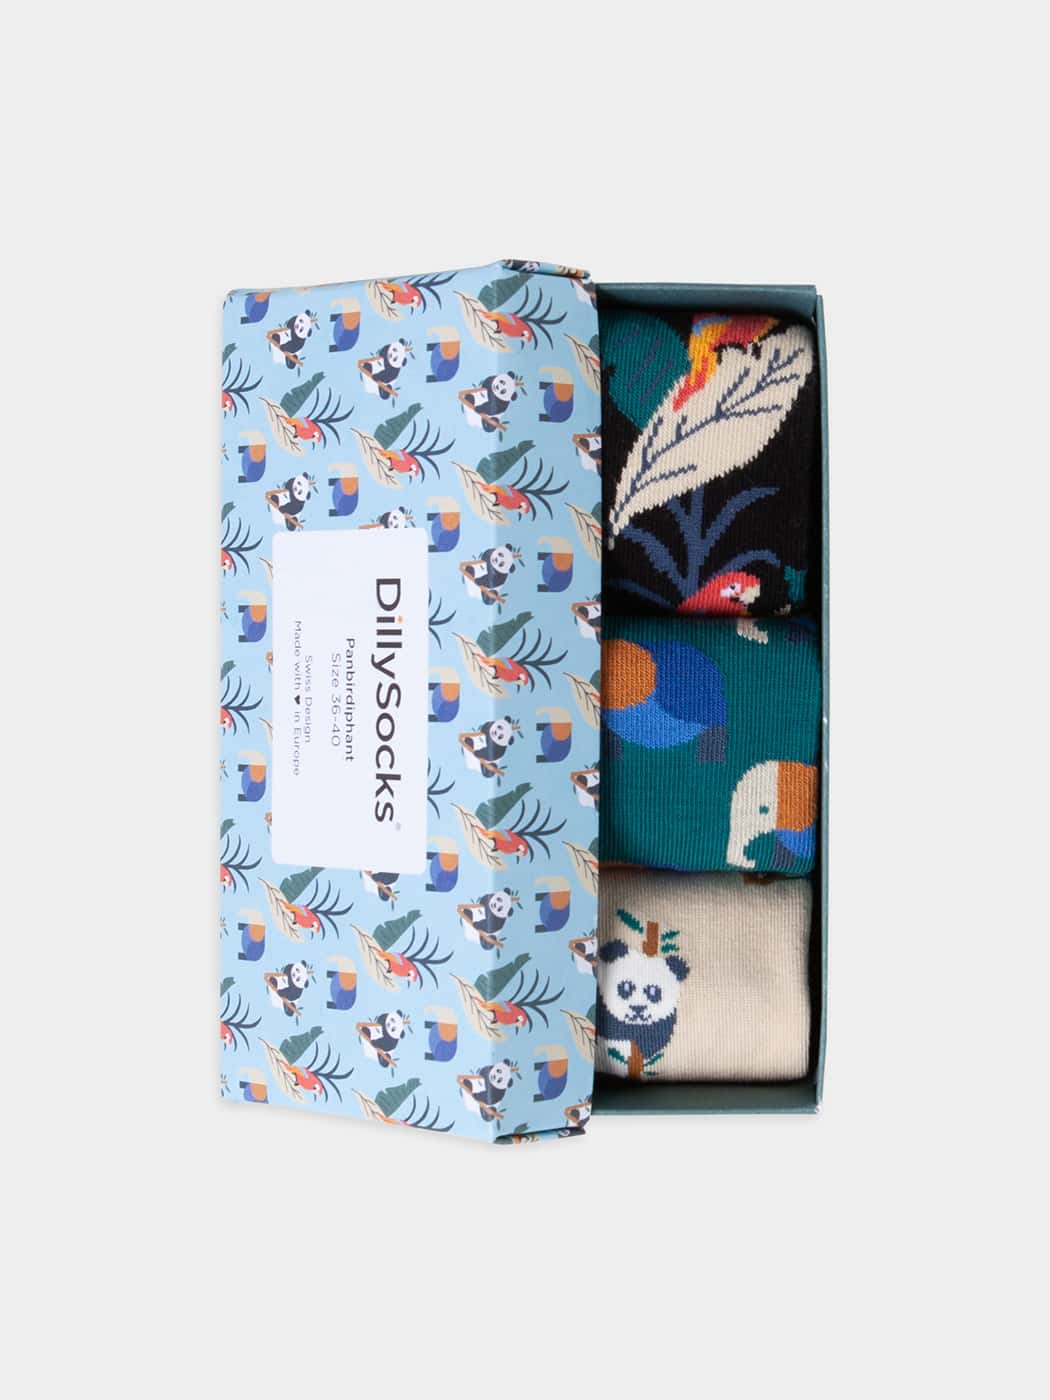 - Socken-Geschenkbox in Blau Schwarz Beige mit Tier Motiv/Muster von DillySocks